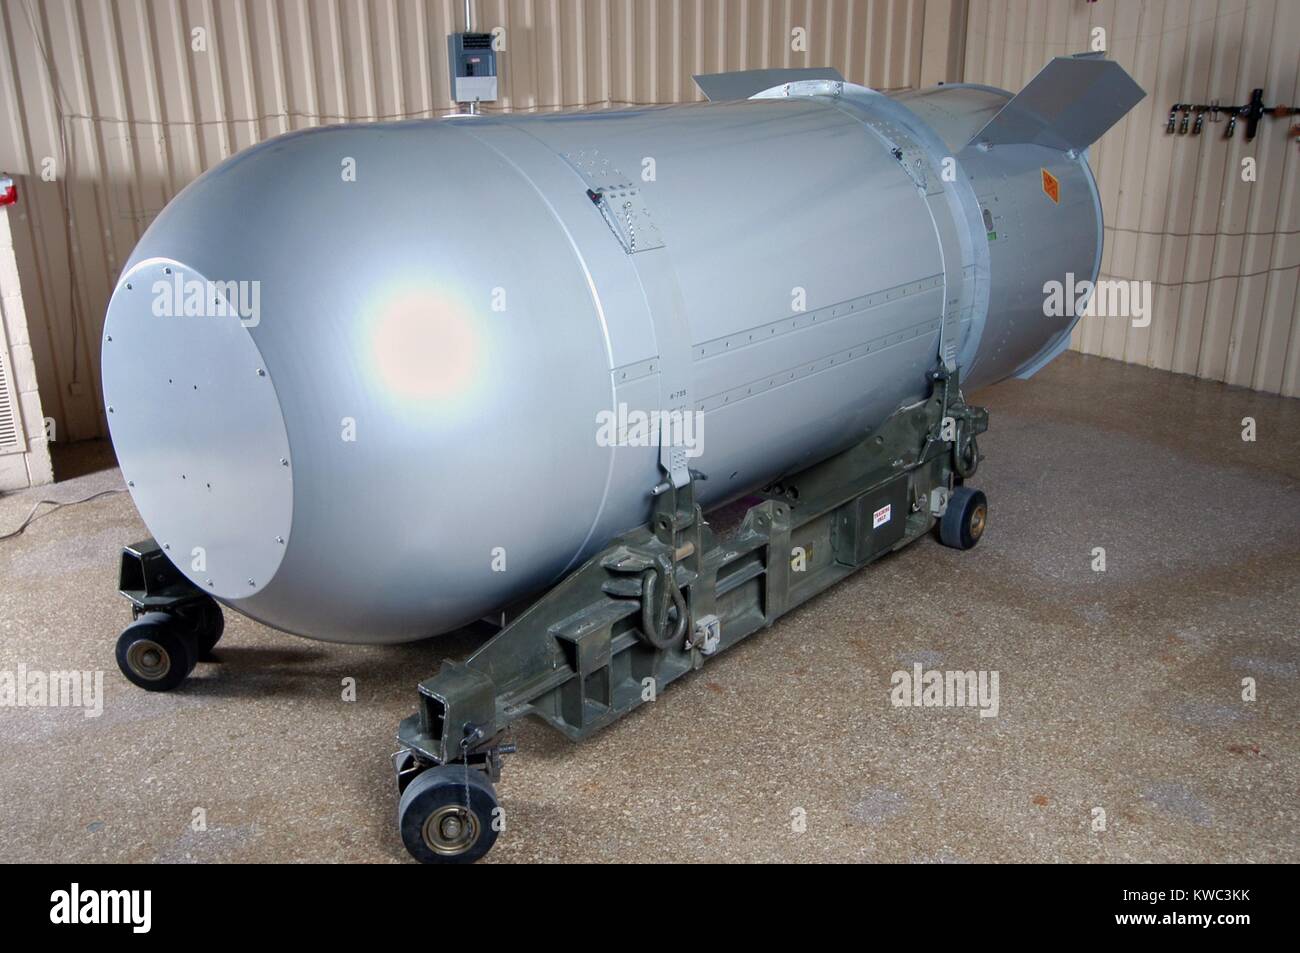 Bomba termonucleare NEGLI STATI UNITI Arsenal nel 2011. Il Mk/B53 è stata una ad alta resa bunker buster thermonuclear arma sviluppata negli anni Sessanta dagli Stati Uniti durante la Guerra Fredda. Distribuito su Strategic Air Command bombardieri B53, aveva una resa di 9 megaton. L'ultimo B53 è stato smontato il 25 ottobre 2011. (BSLOC 2015 14 131) Foto Stock